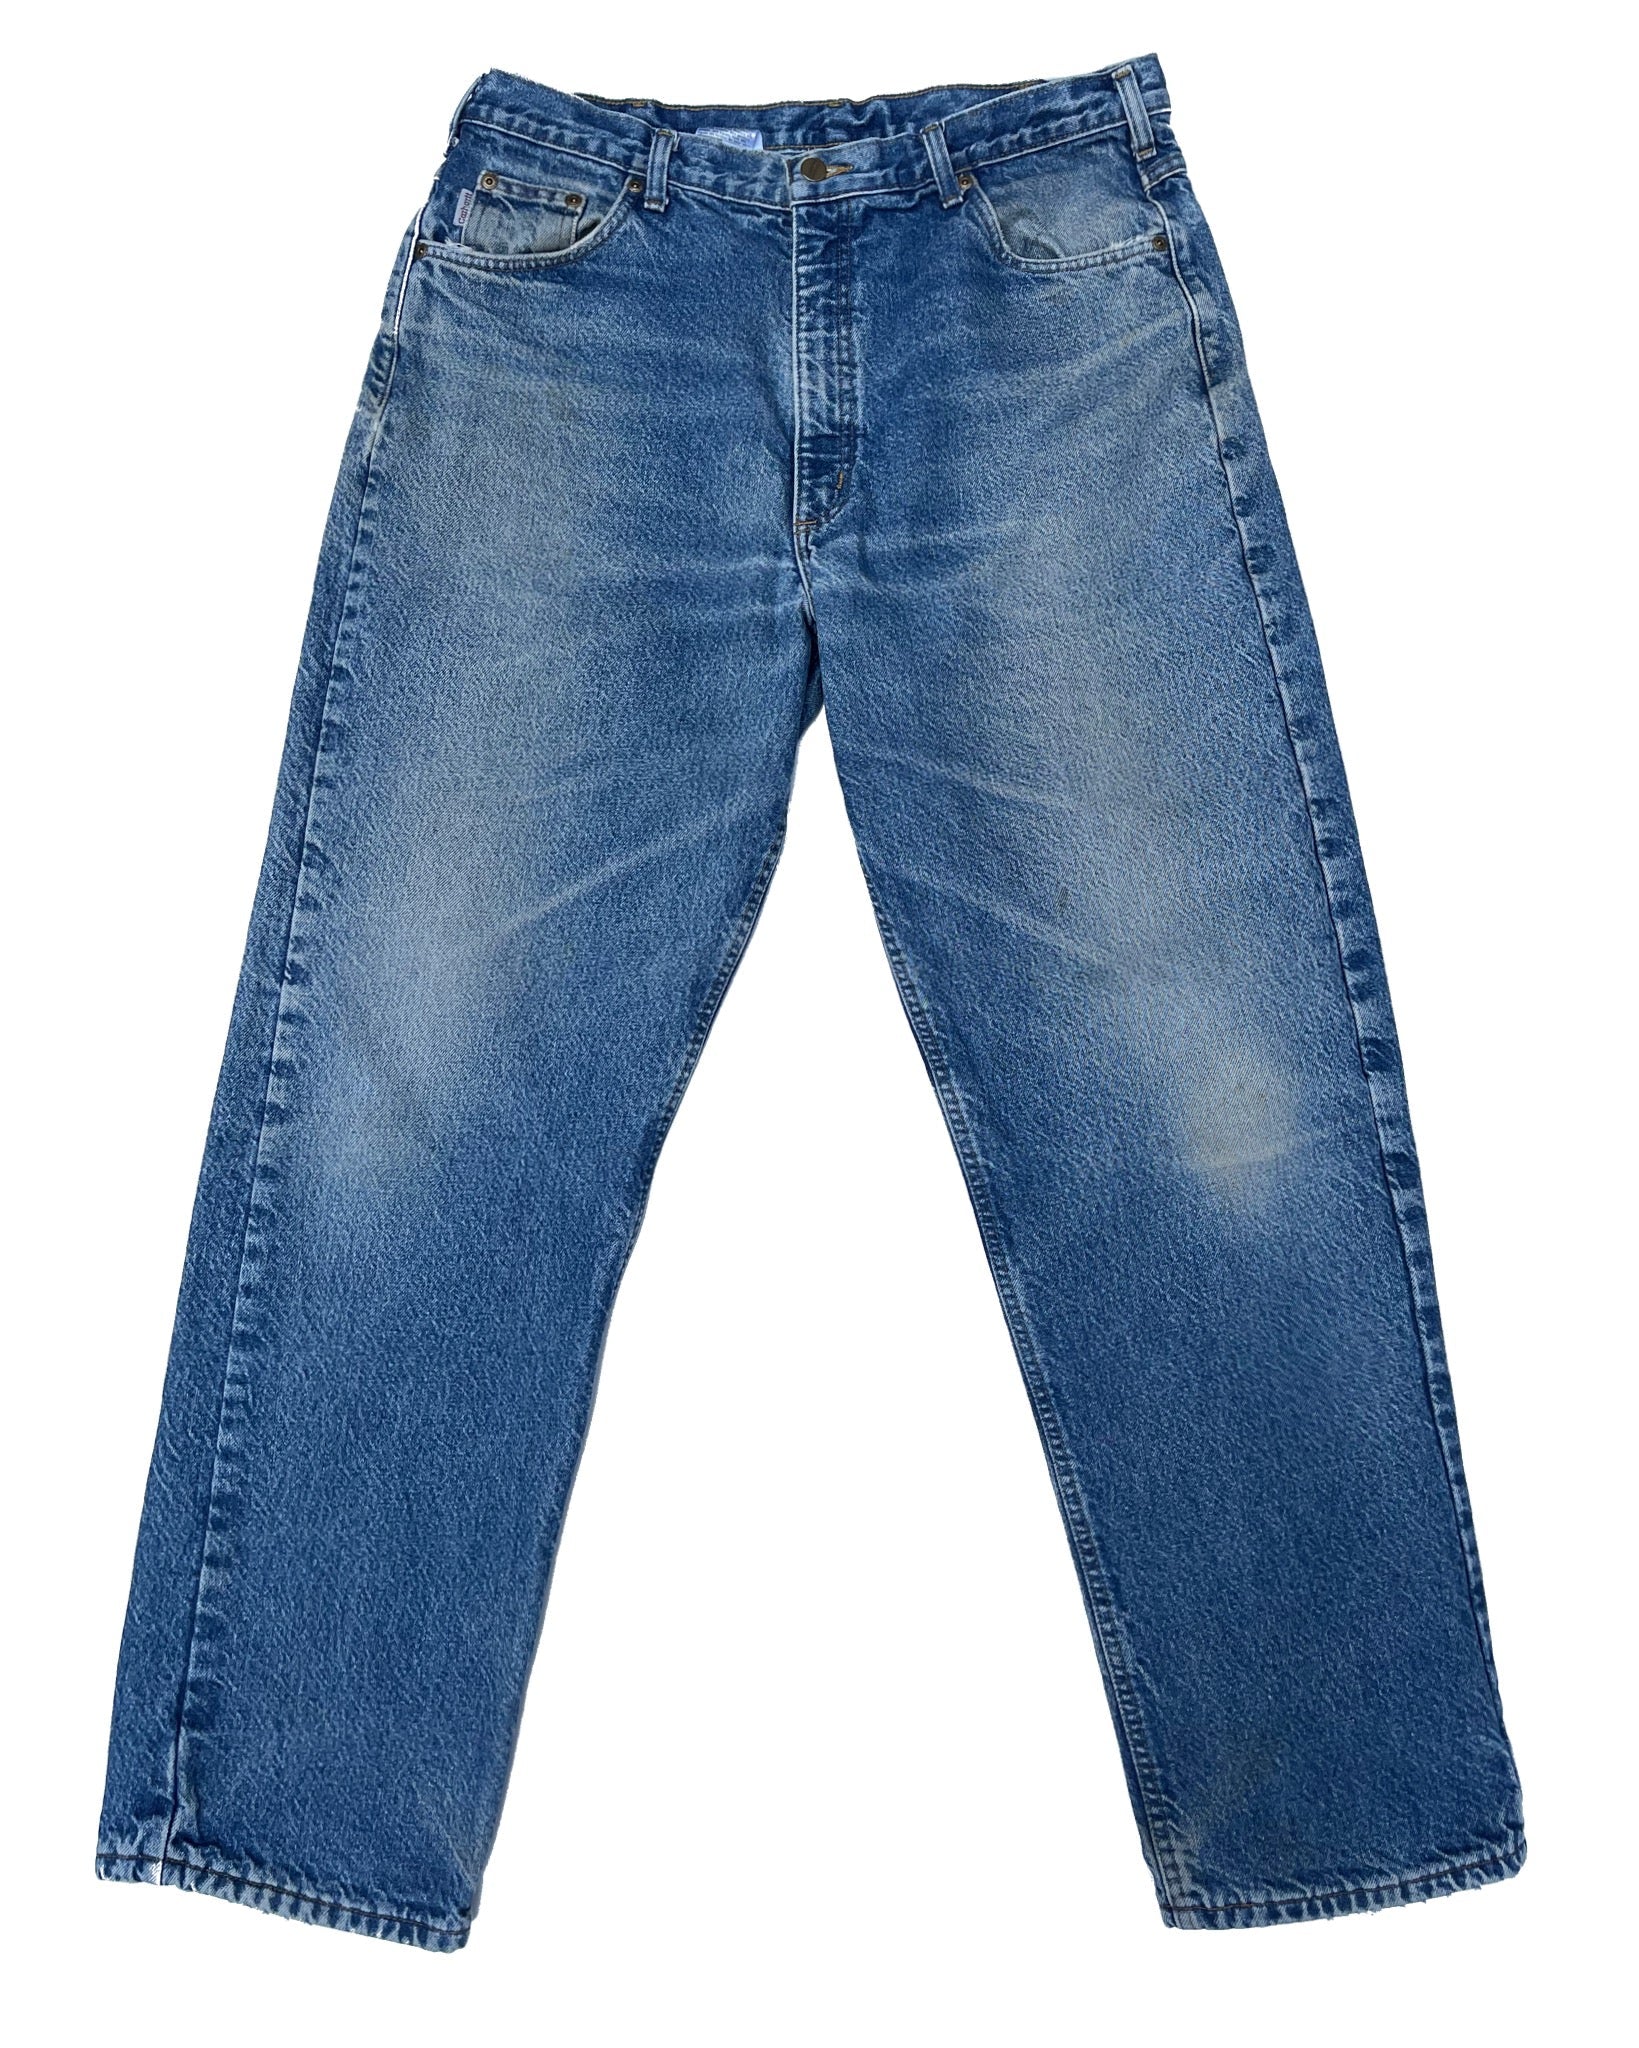  Jeans Carhartt Jean - B21DST - W38 L32 - PLOMOSTORE